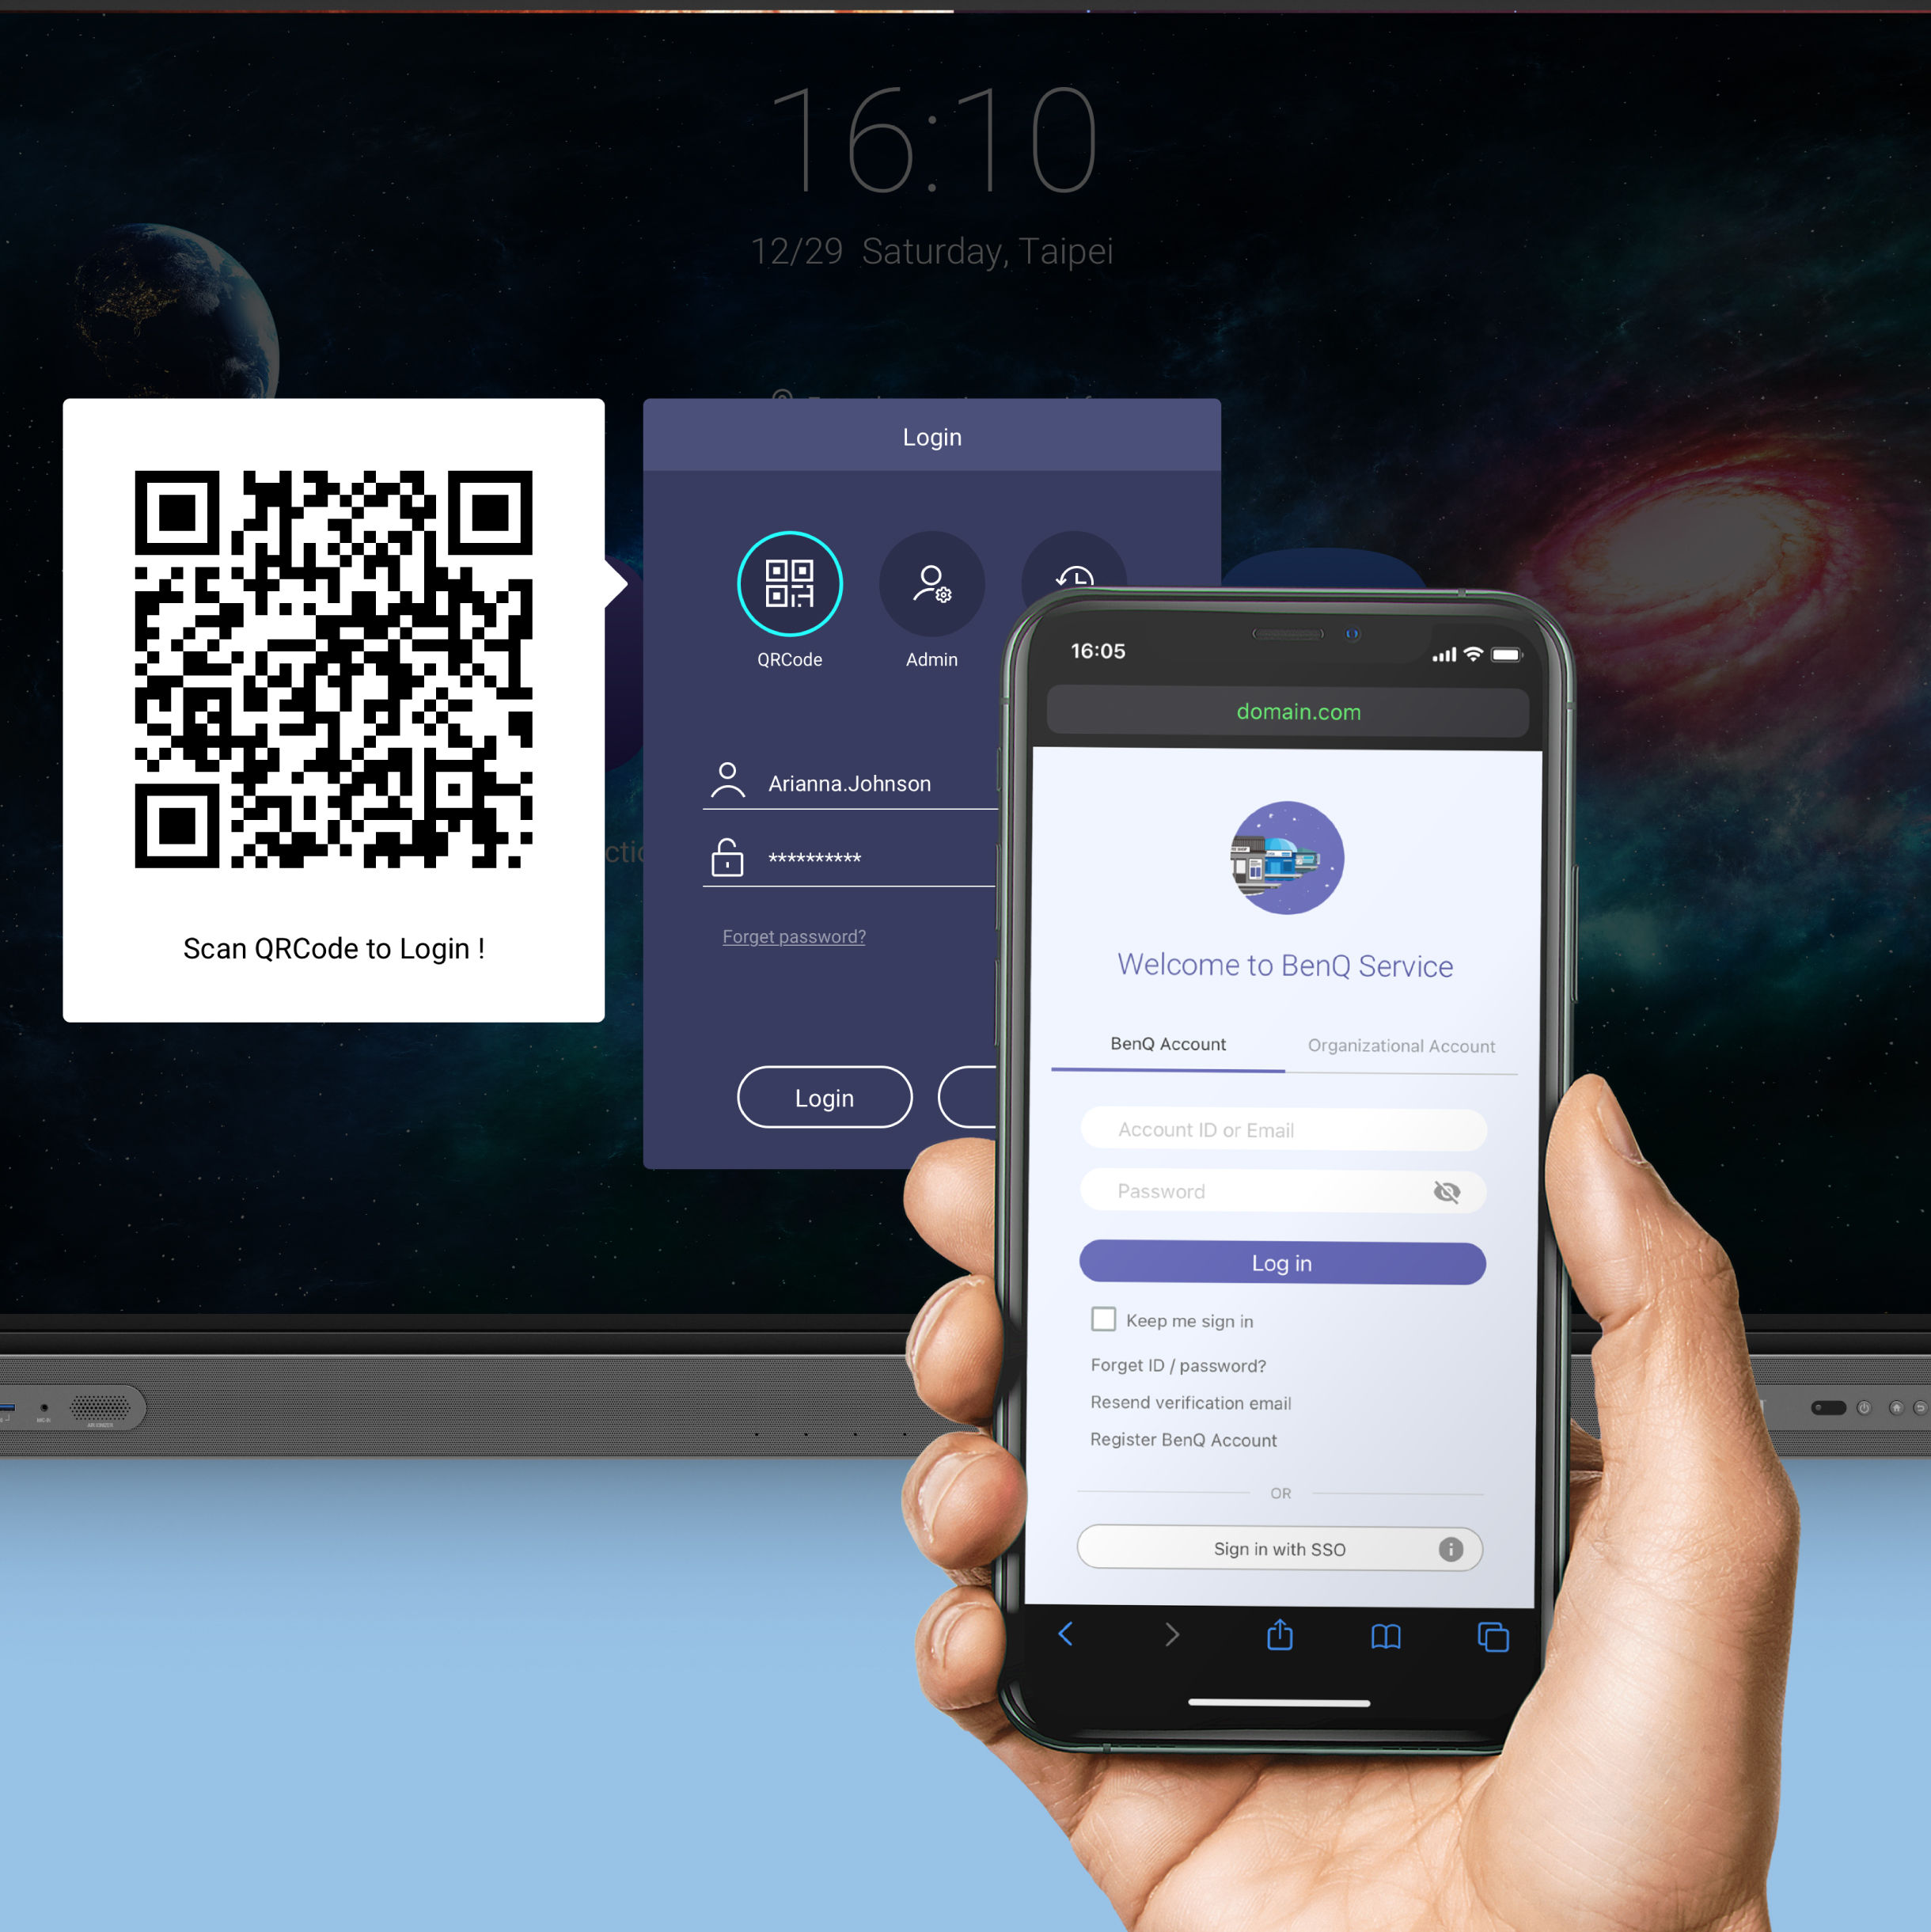 Přihlaste se do displejů BenQ klepnutím na kartu NFC nebo naskenováním QR kódu.